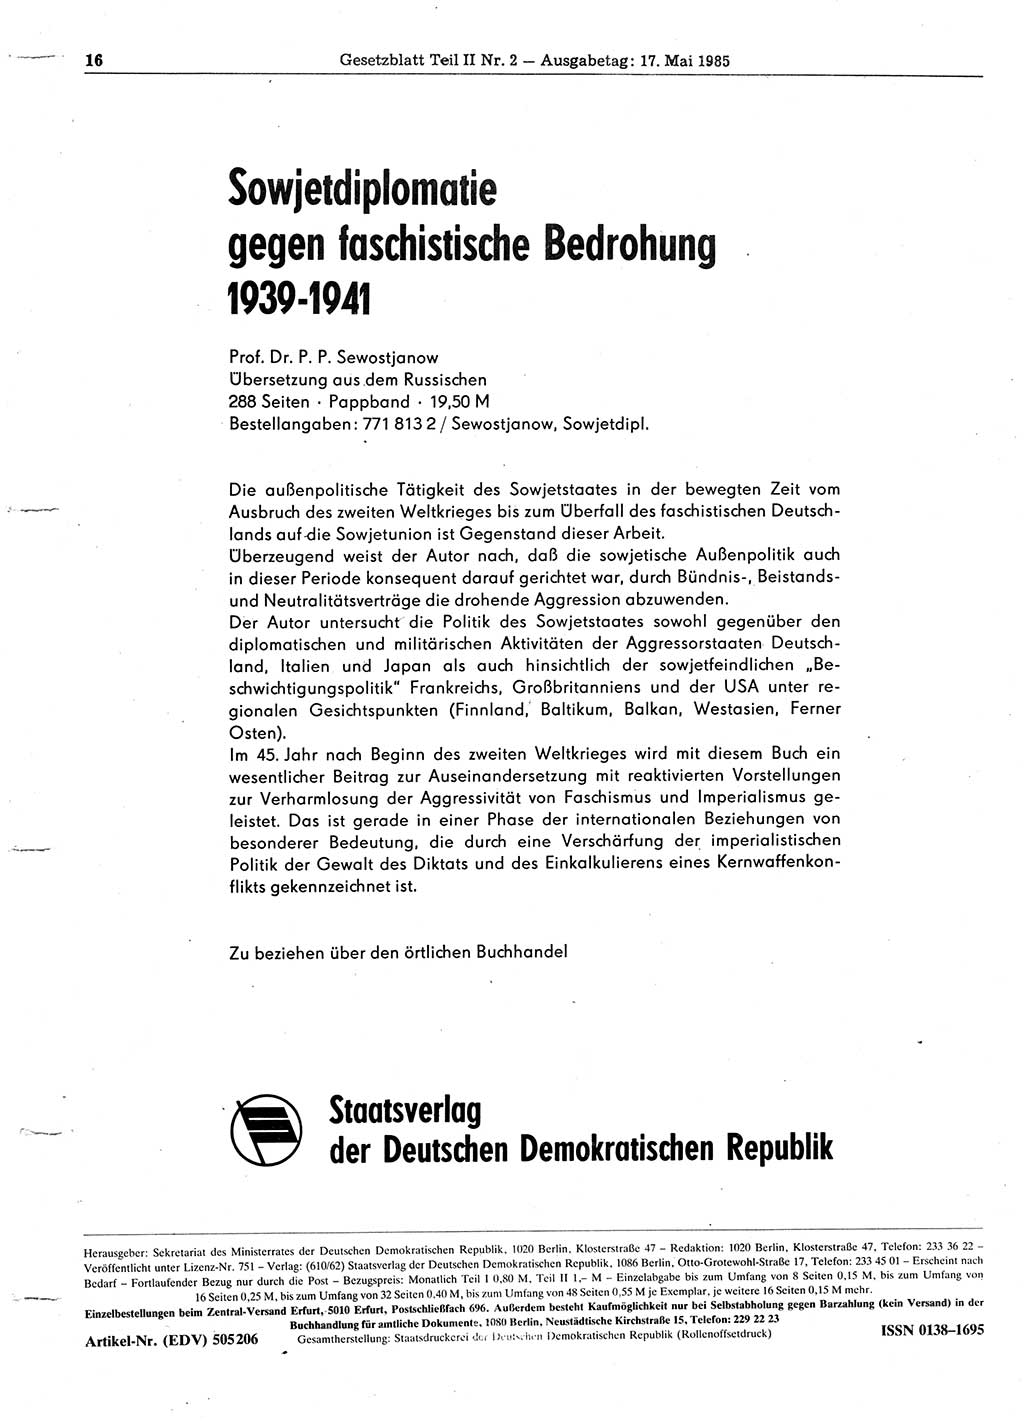 Gesetzblatt (GBl.) der Deutschen Demokratischen Republik (DDR) Teil ⅠⅠ 1985, Seite 16 (GBl. DDR ⅠⅠ 1985, S. 16)